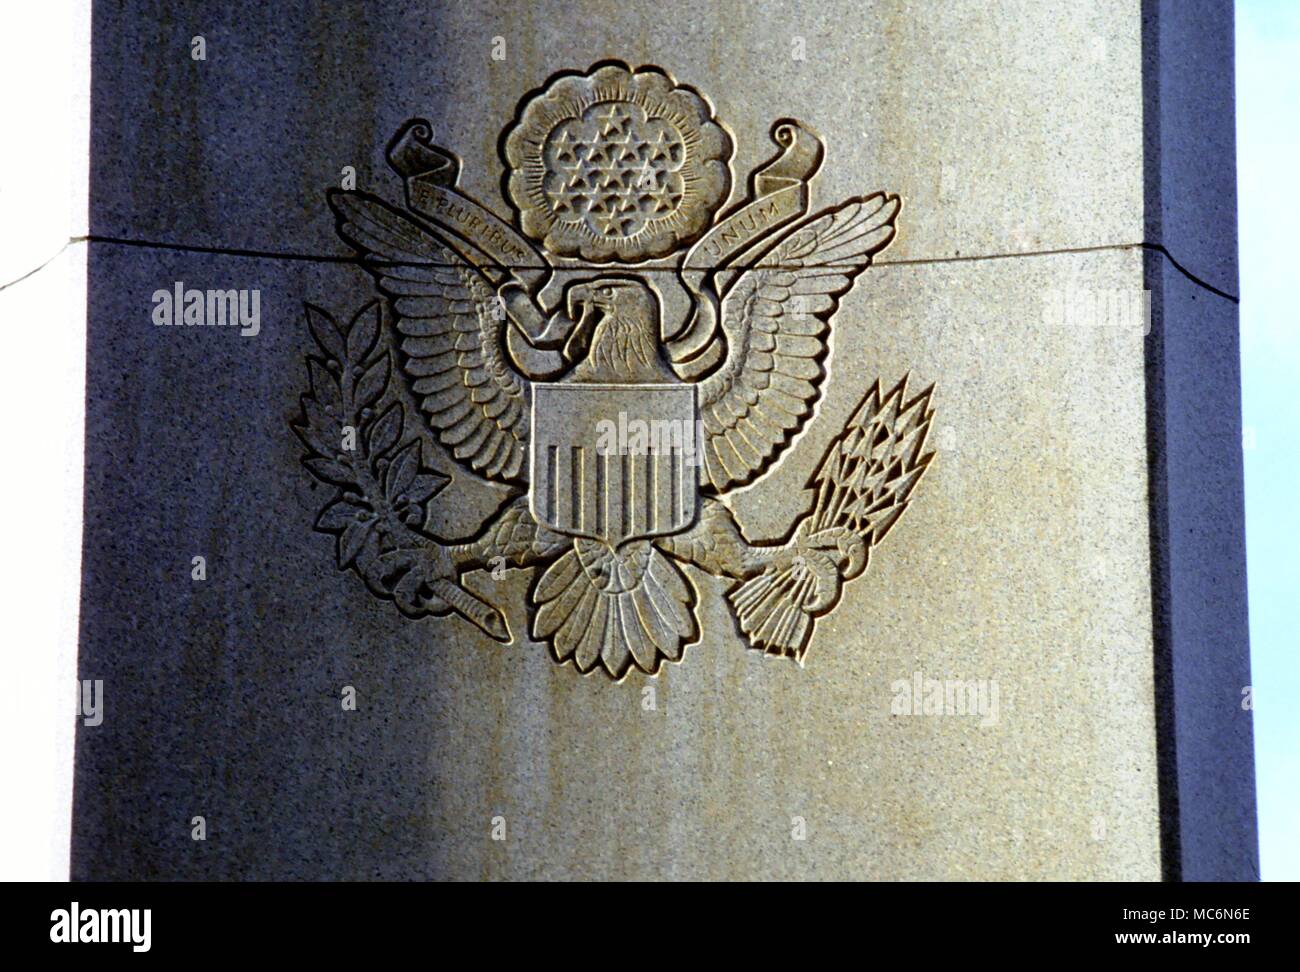 Masonic Grand Sceau de France le sceau des États-Unis d'Amérique selon de nombreux occultistes conçu par un groupe de maçons et dont plusieurs symboles maçonniques d'un monument à Washington DC Banque D'Images